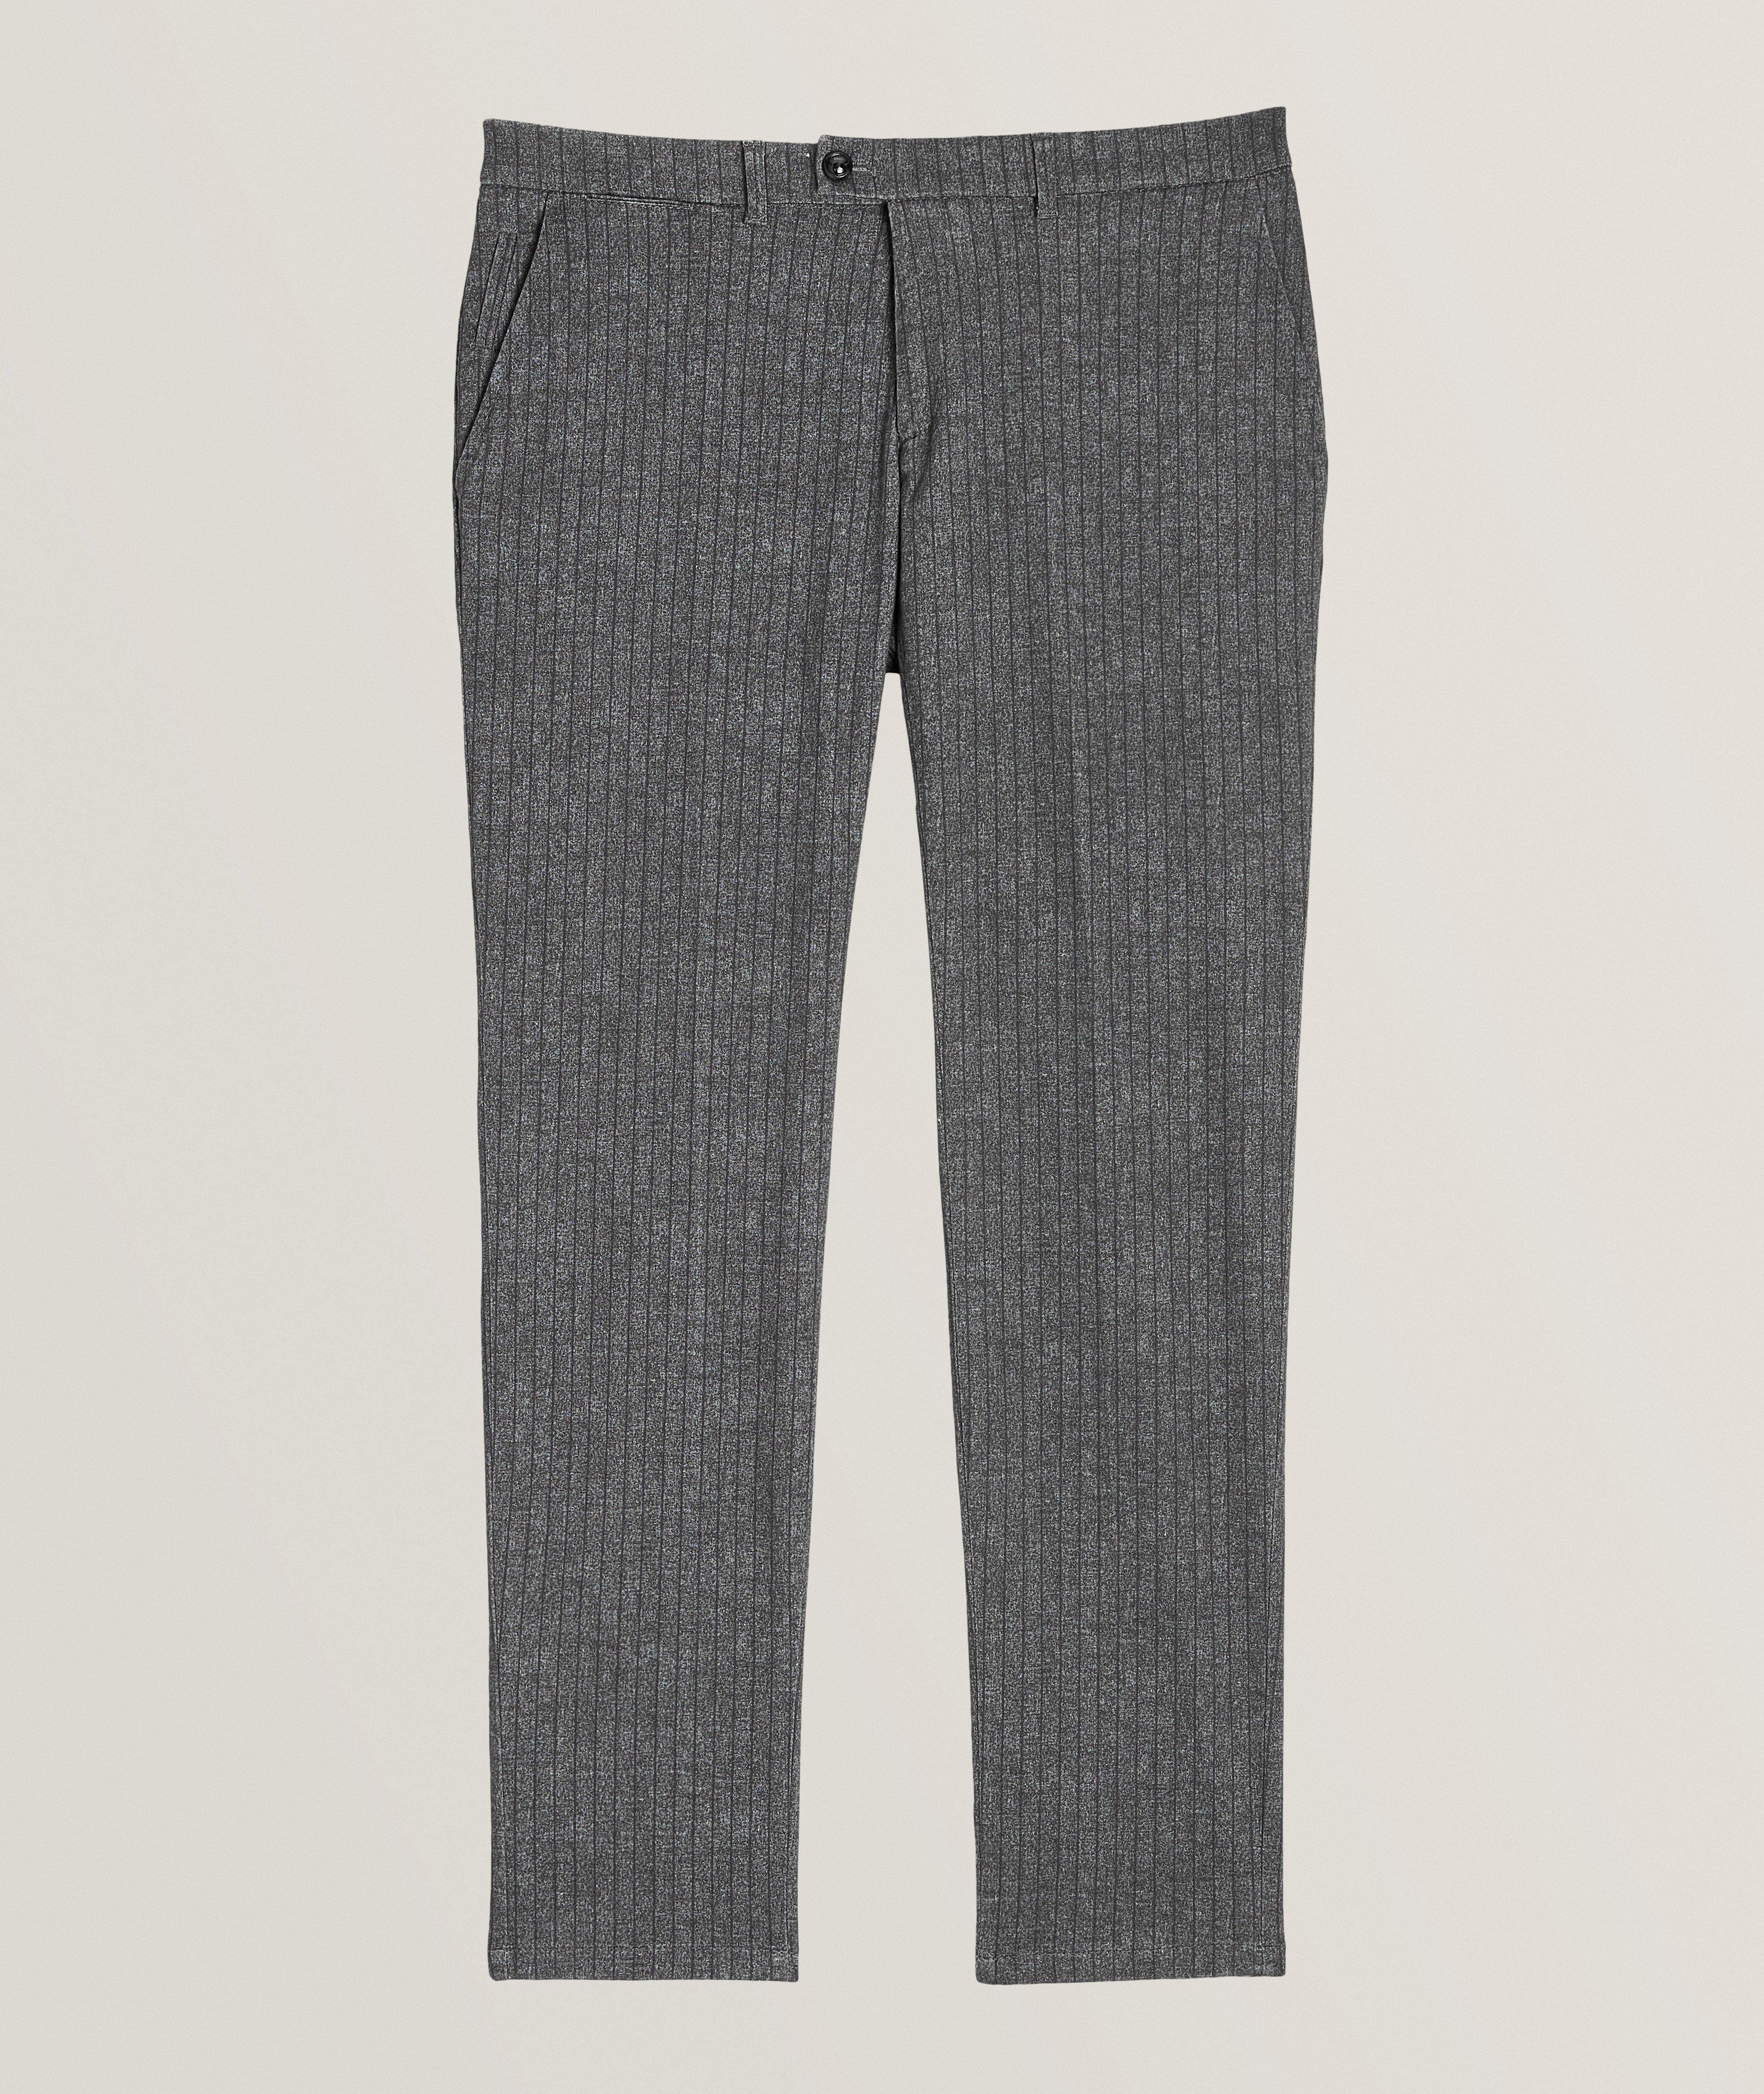 Pantalon en coton extensible à rayures, édition numérotée image 0